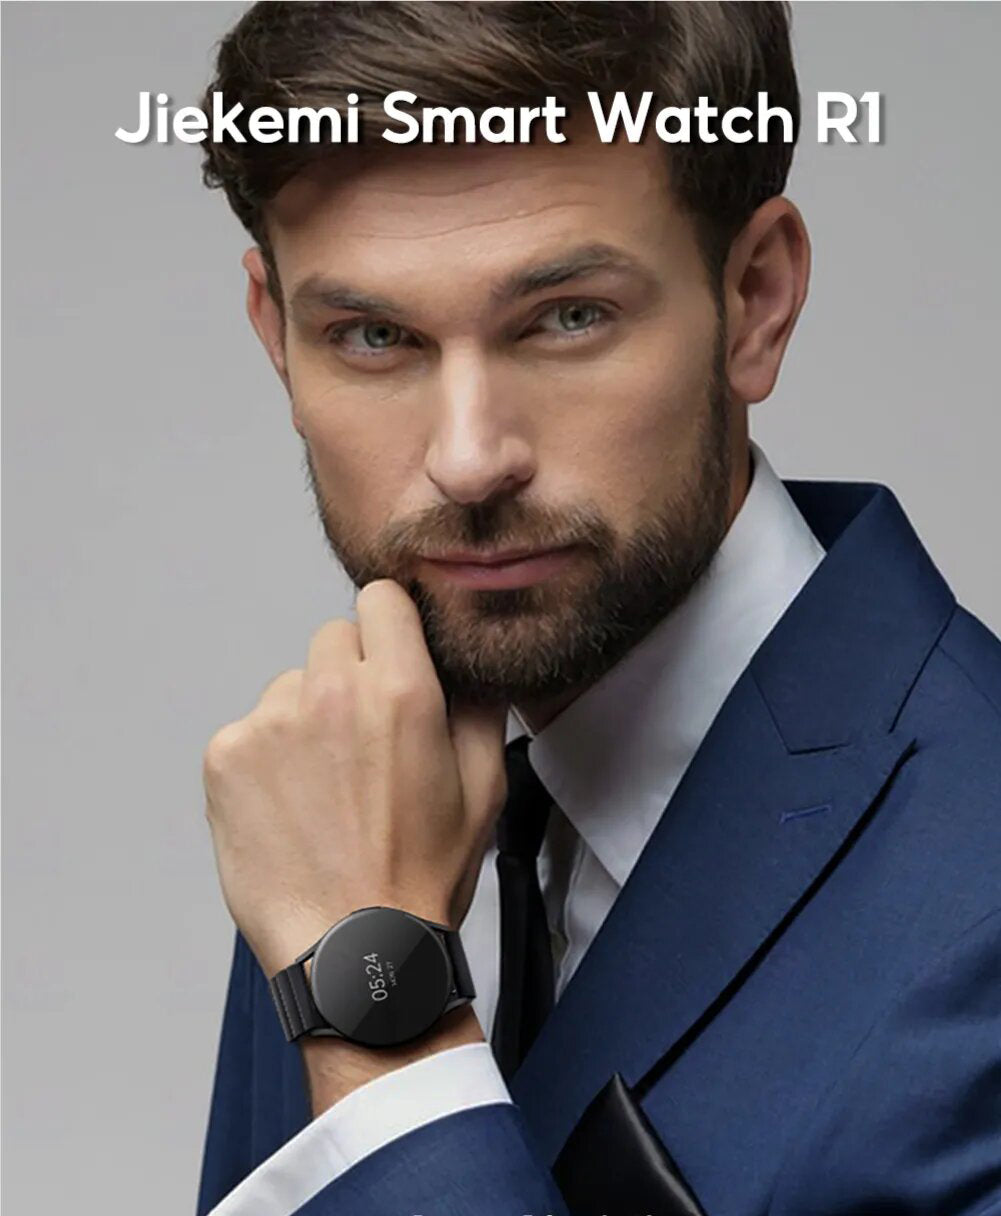 ساعة ذكية مقاومة للماء من JIEKEMI R1 مع شاشة لمس كاملة، مراقب معدل ضربات القلب، عداد الخطوات، متتبع النوم وتوقعات الطقس - أسود